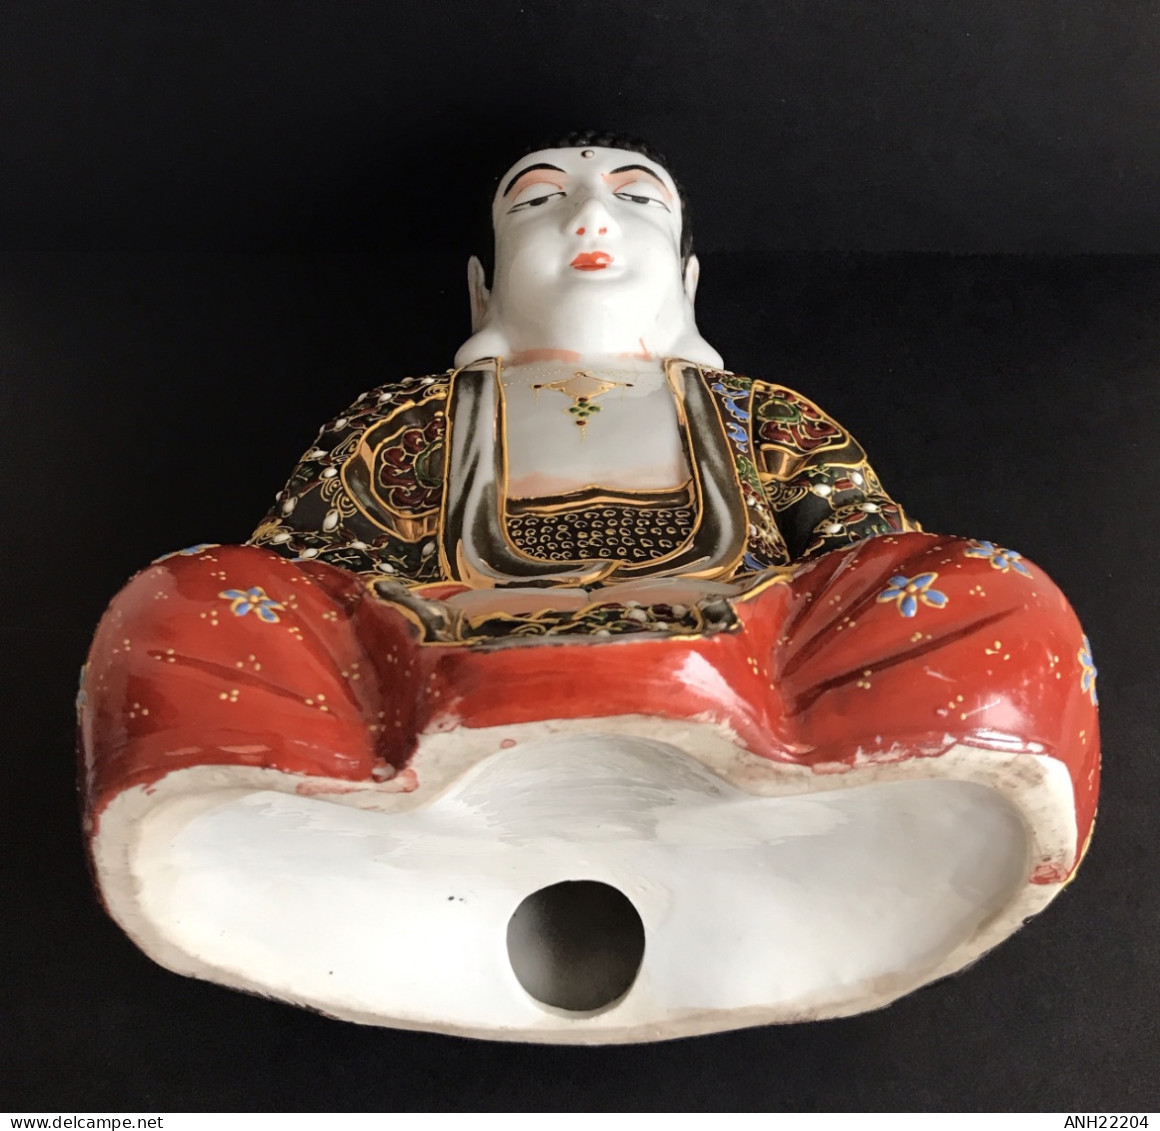 Magnifique Statuette de Bouddha en porcelaine Satsuma (25,5x18x14 cm) finement décoré, Chine, 1970/1980